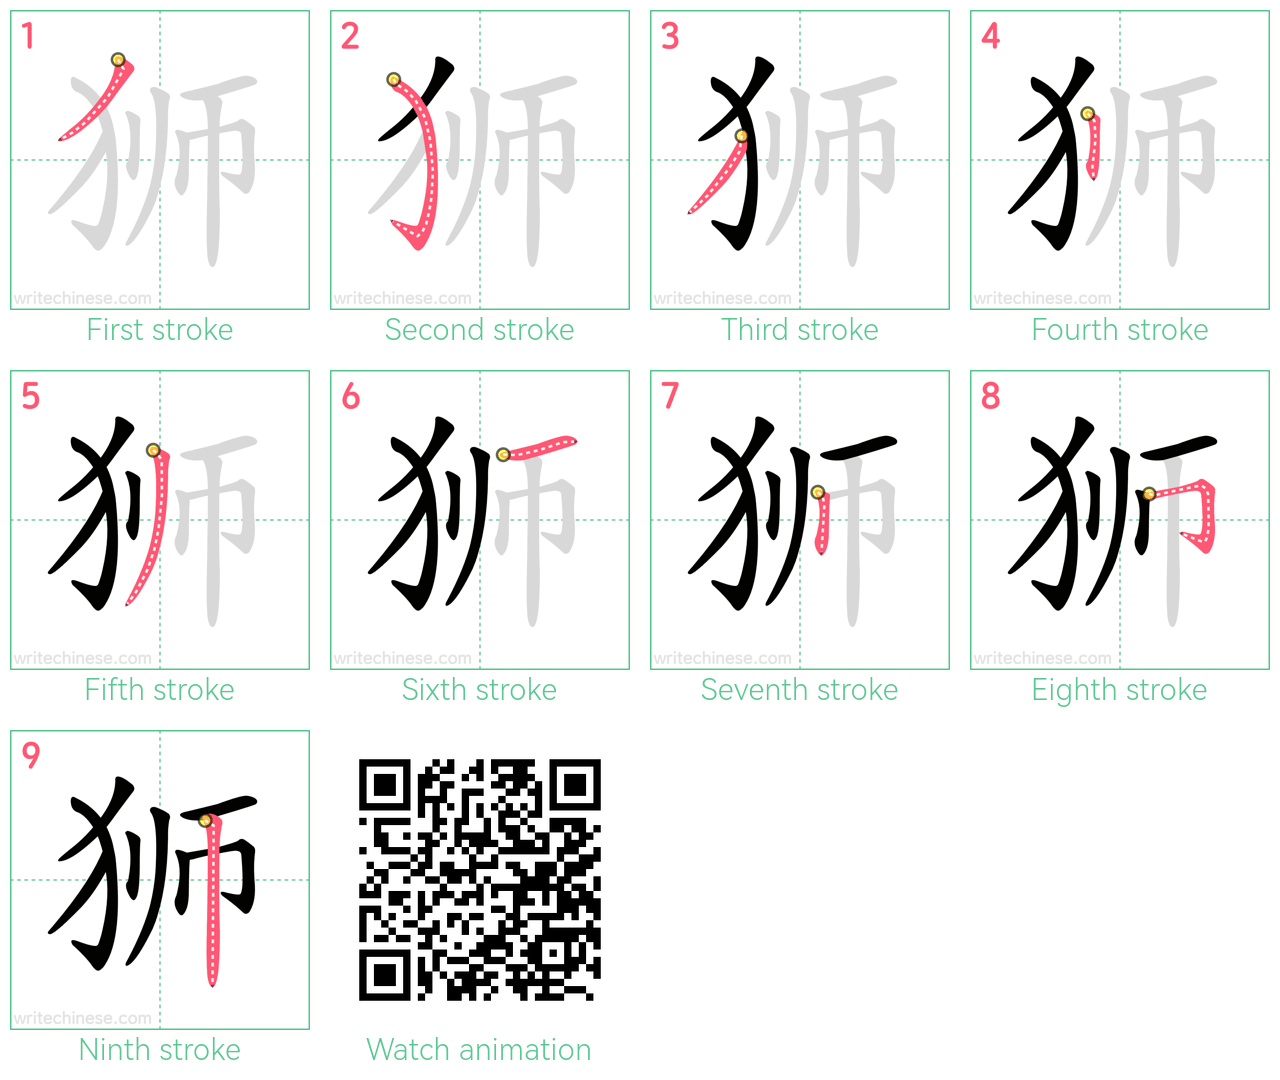 狮 step-by-step stroke order diagrams